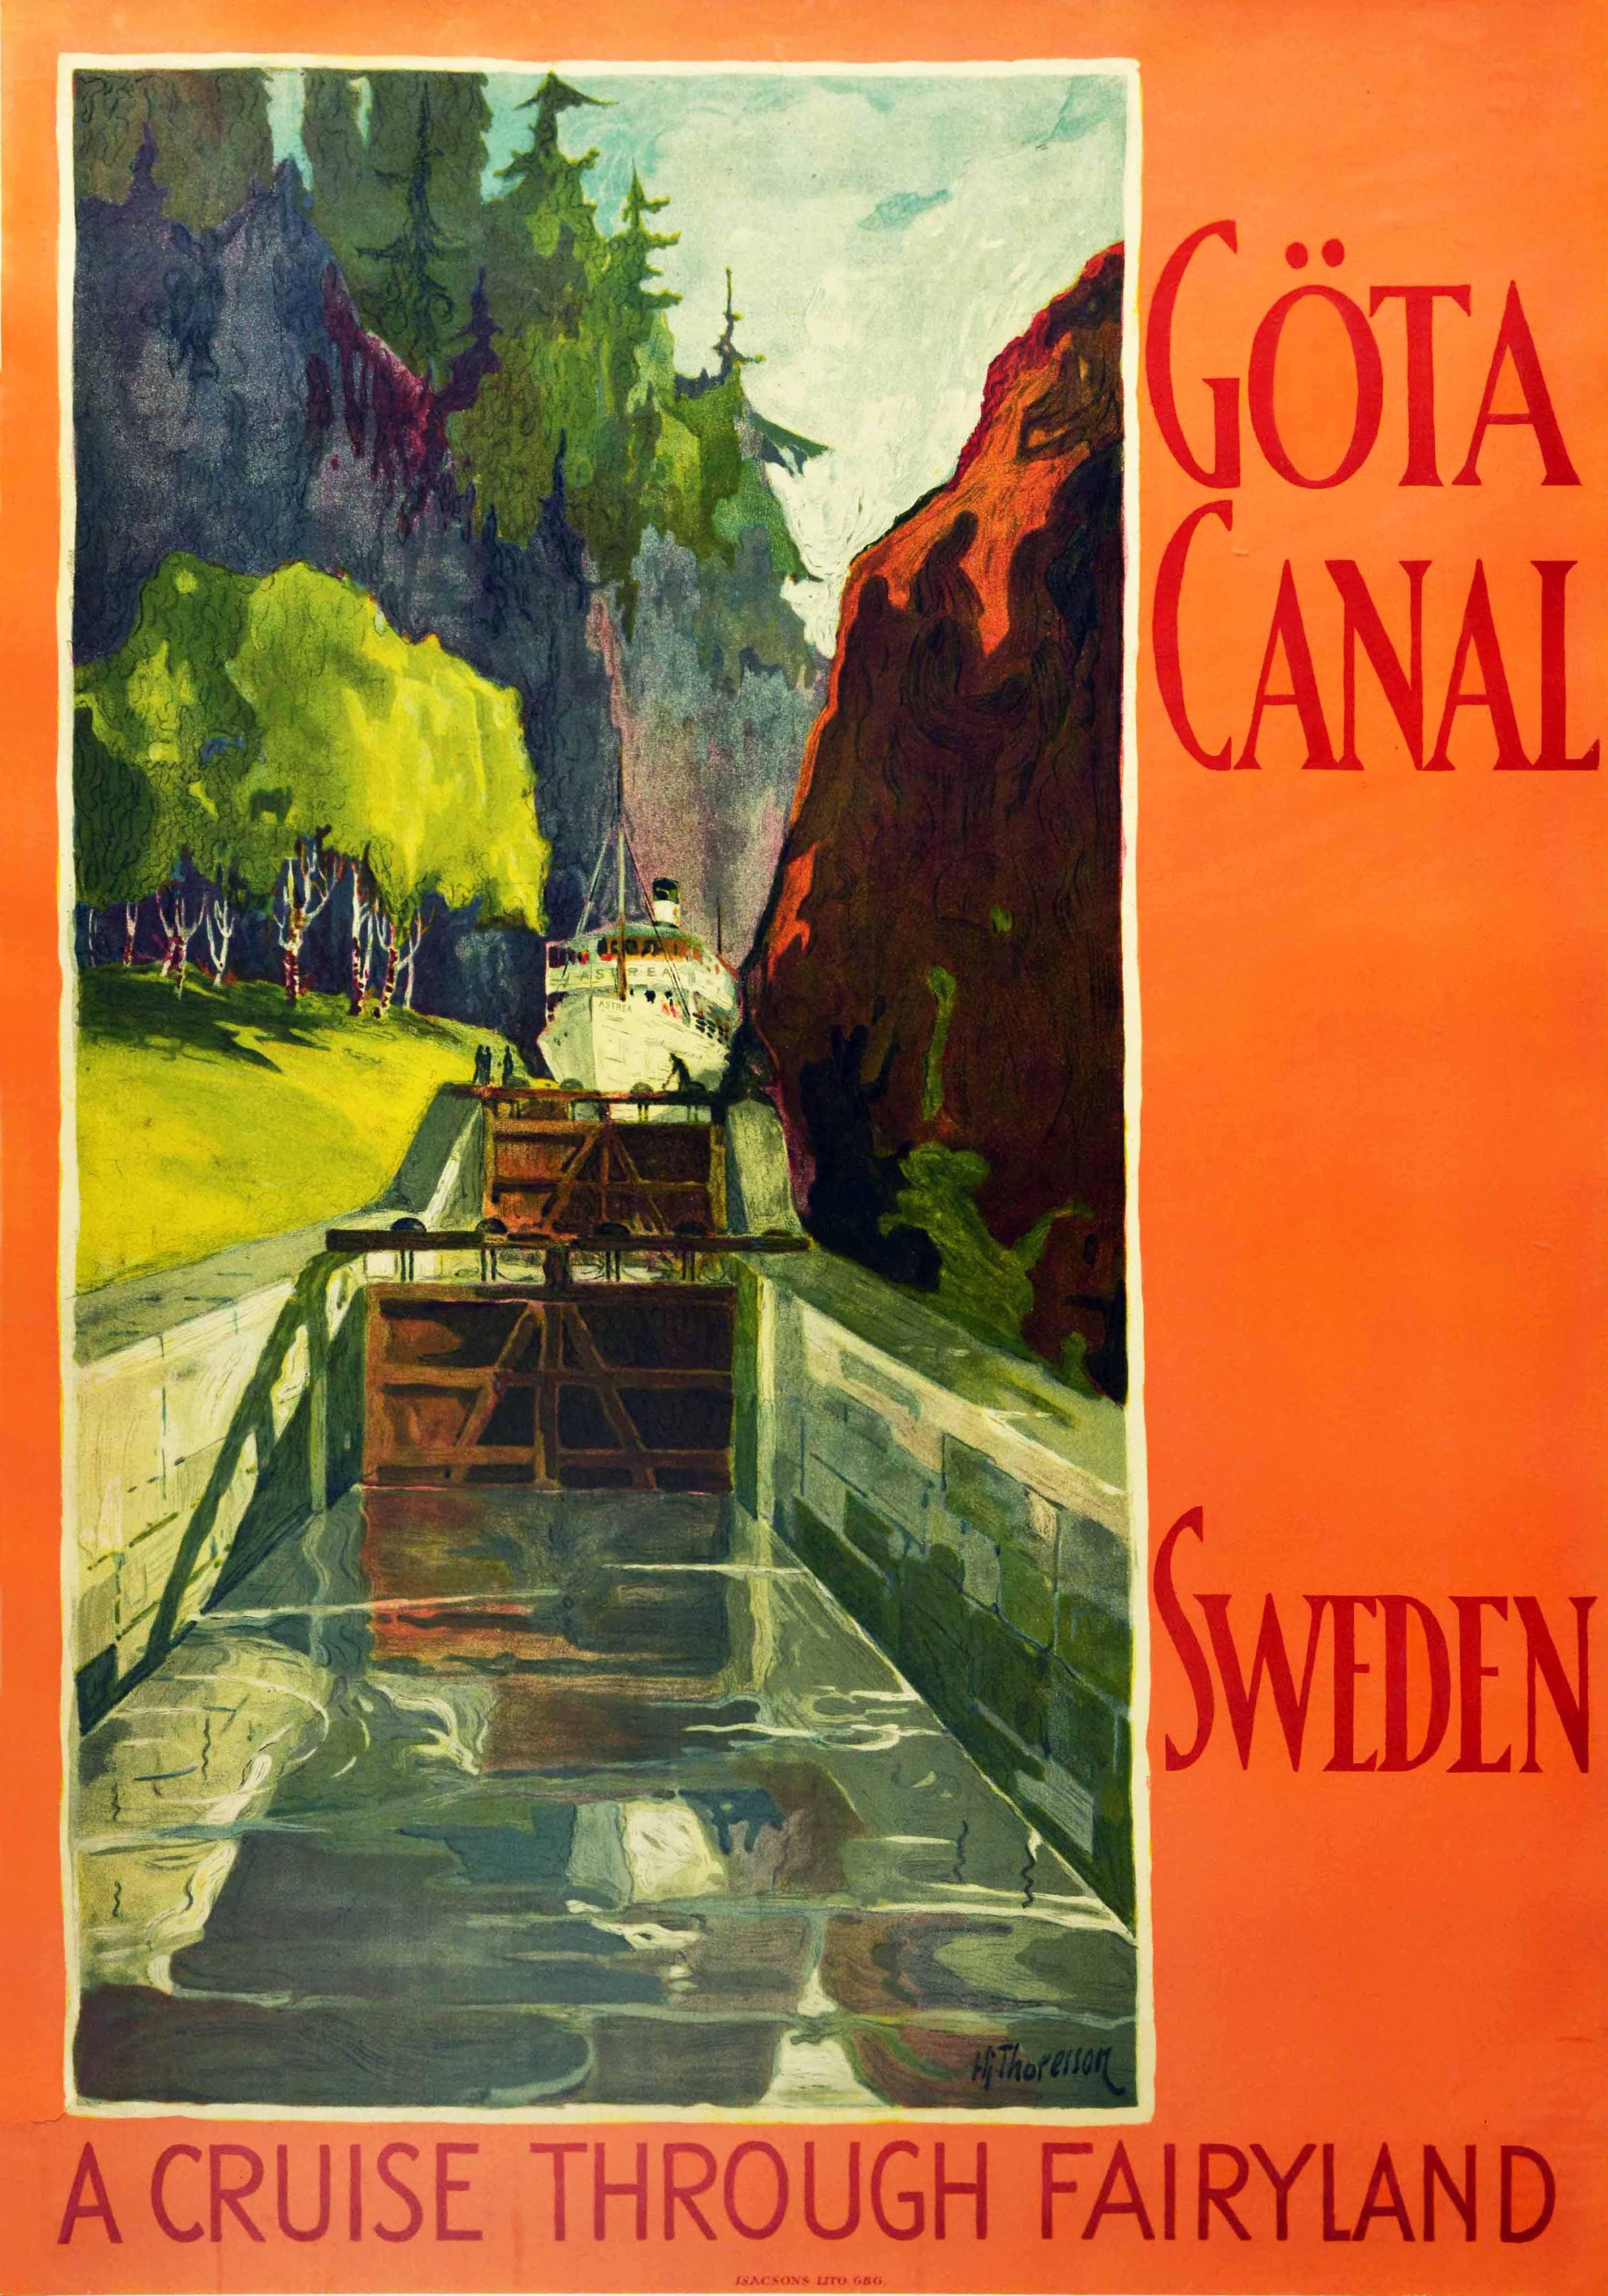 Hj. Thoresson Print – Original-Vintage-Poster, Gota Canal Cruise Through Fairyland, Schweden, Segelkunst